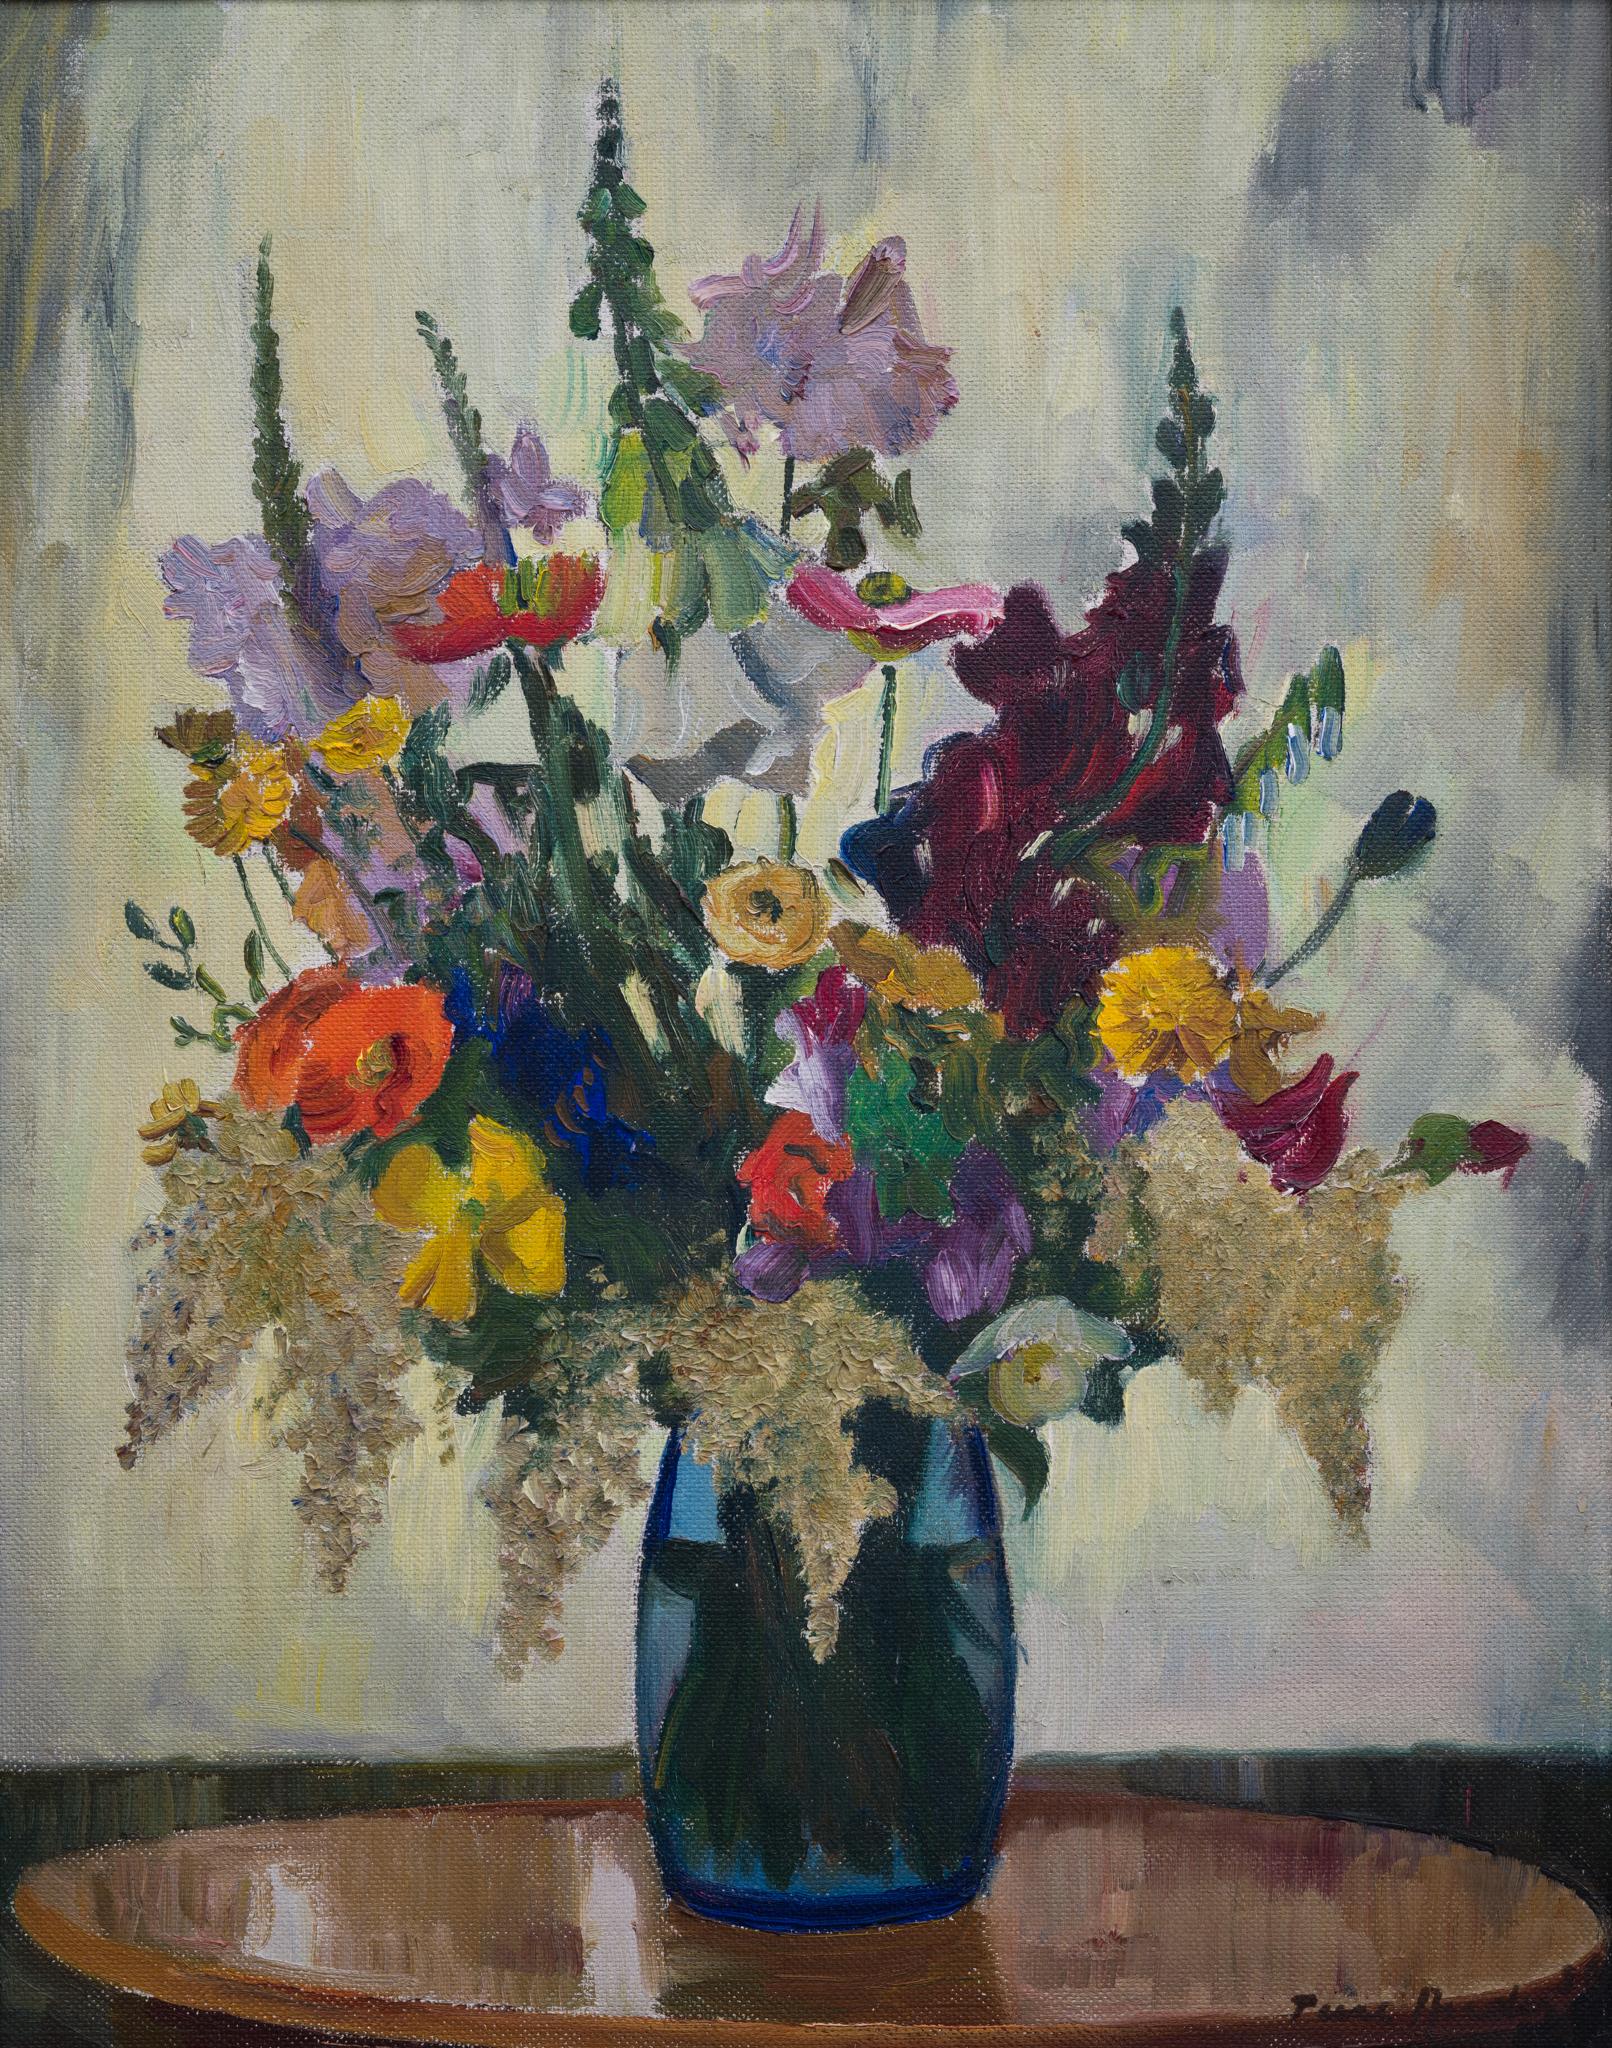 Un bouquet de numériques, coquelicot, iris, Snapdragons, tournesol, coupe à beurre, 1936 - Painting de Ture Ander